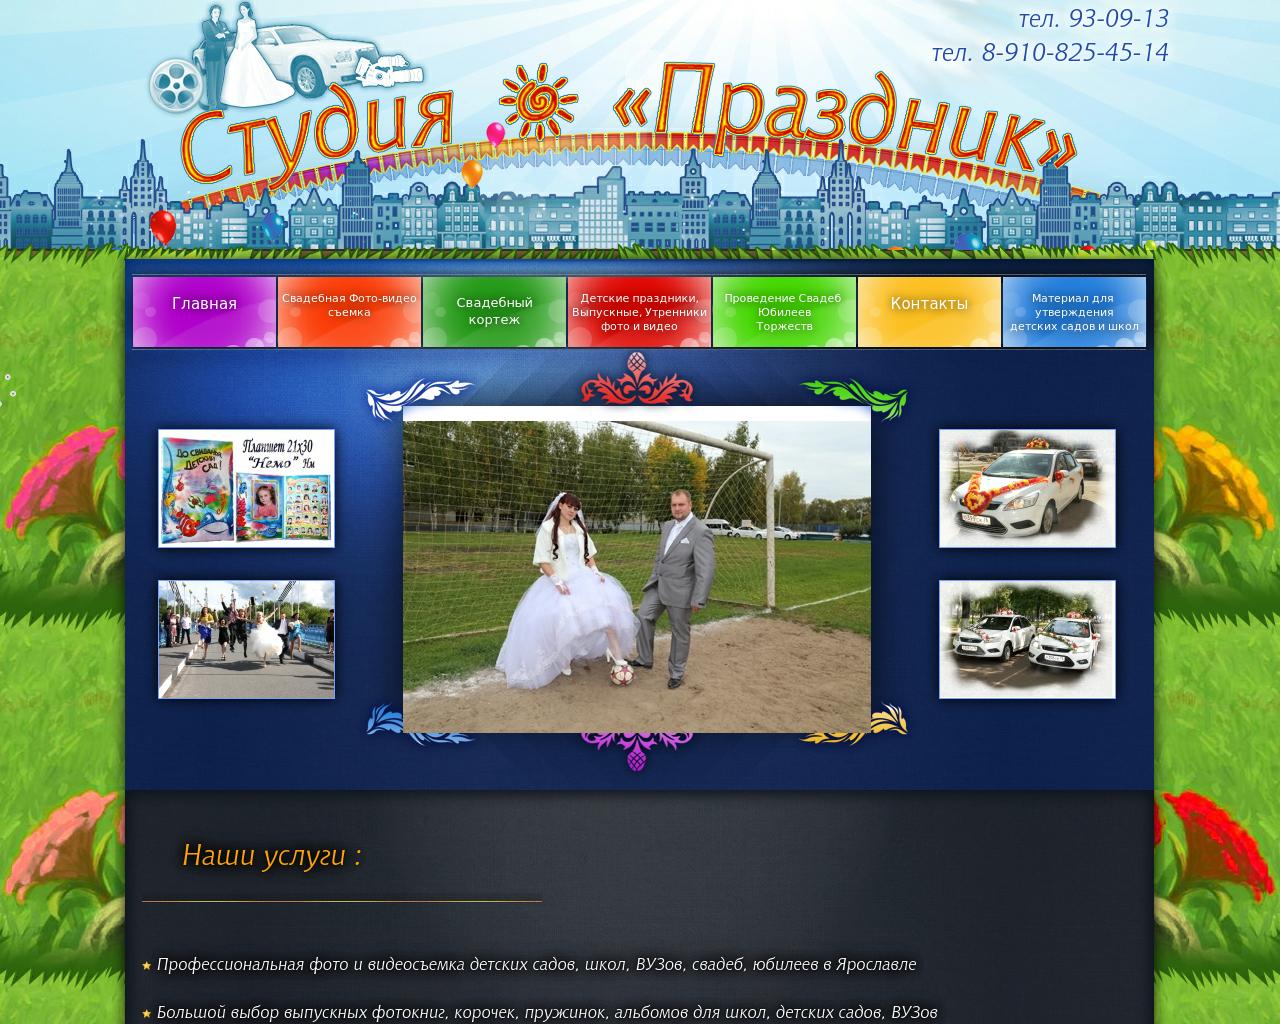 Изображение сайта 930913.ru в разрешении 1280x1024